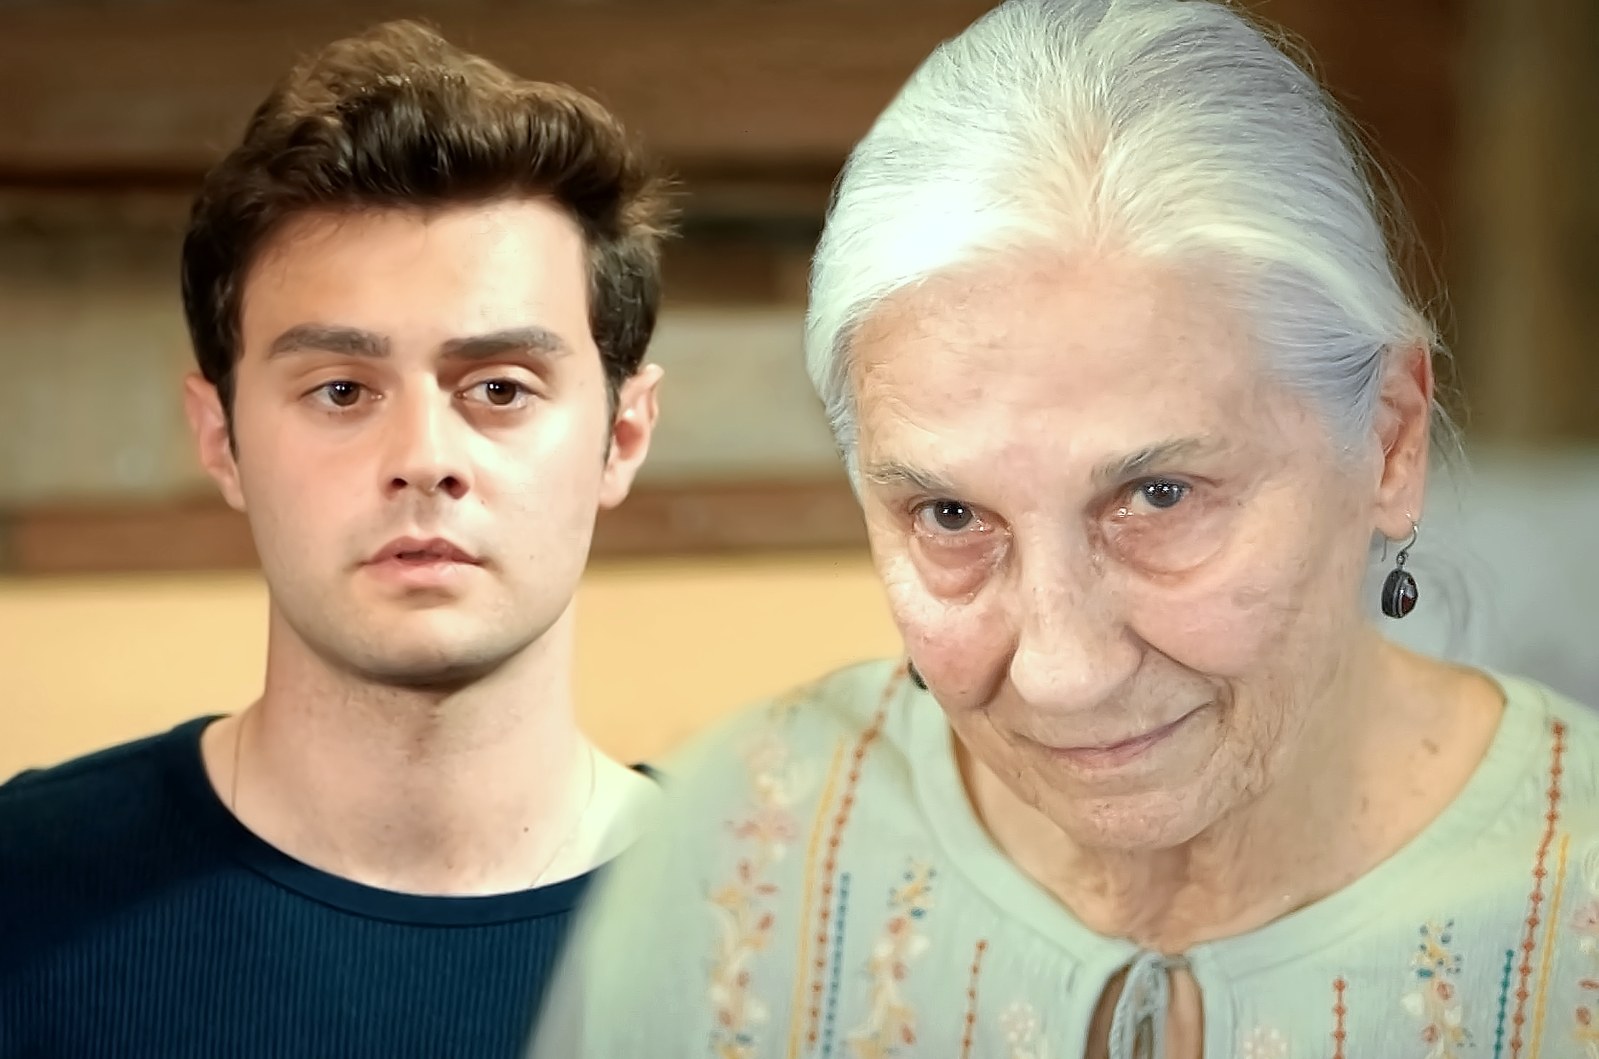 Ömer se queda sin habla cuando descubre que Sevgi es su abuela, en Hermanos